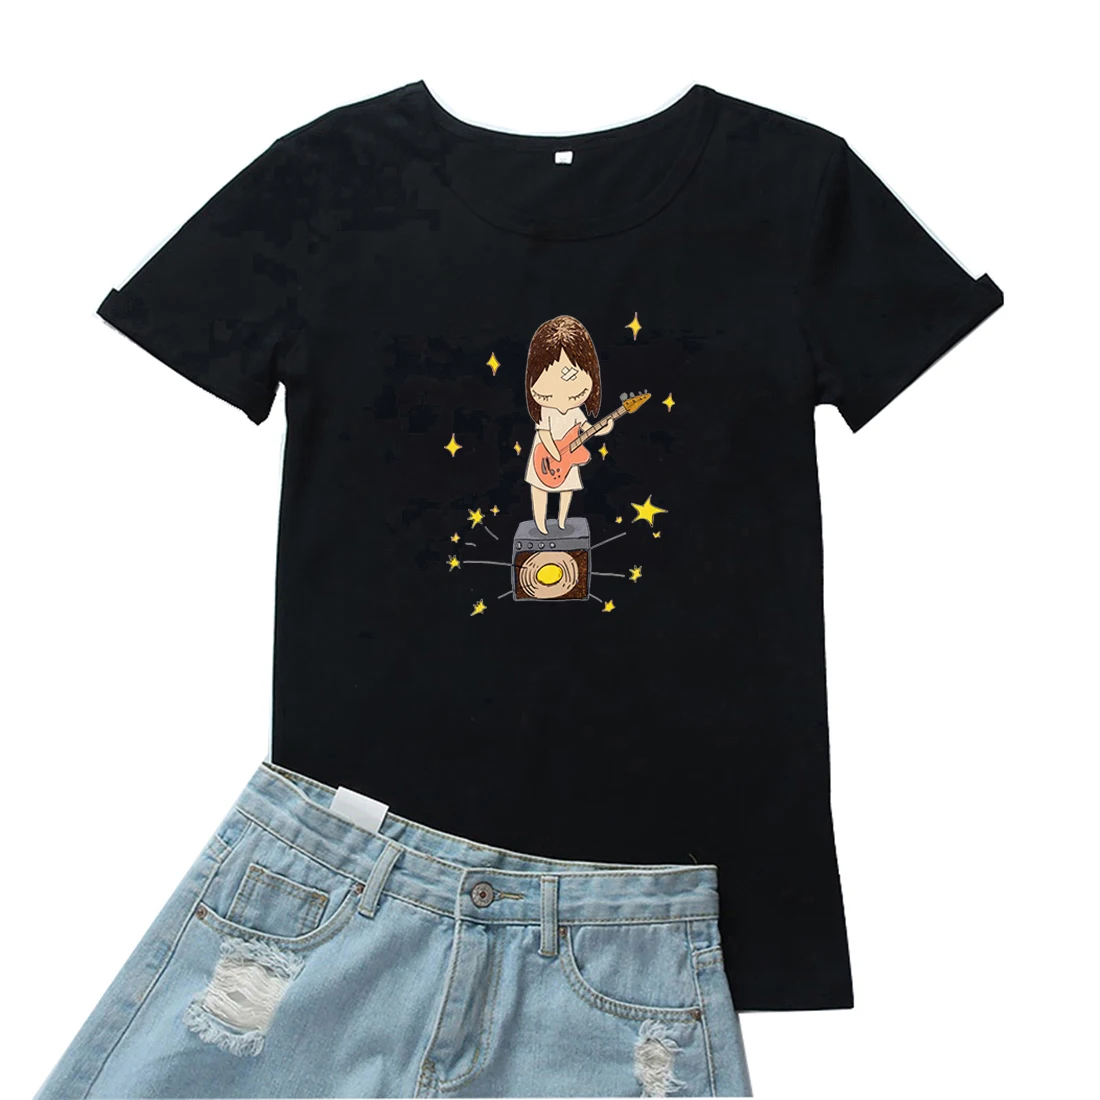 

Женская футболка с изображением девушки, играющей на гитаре, женская футболка с милым мультяшным рисунком, Забавный аниме принт, женские футболки с коротким рукавом, одежда